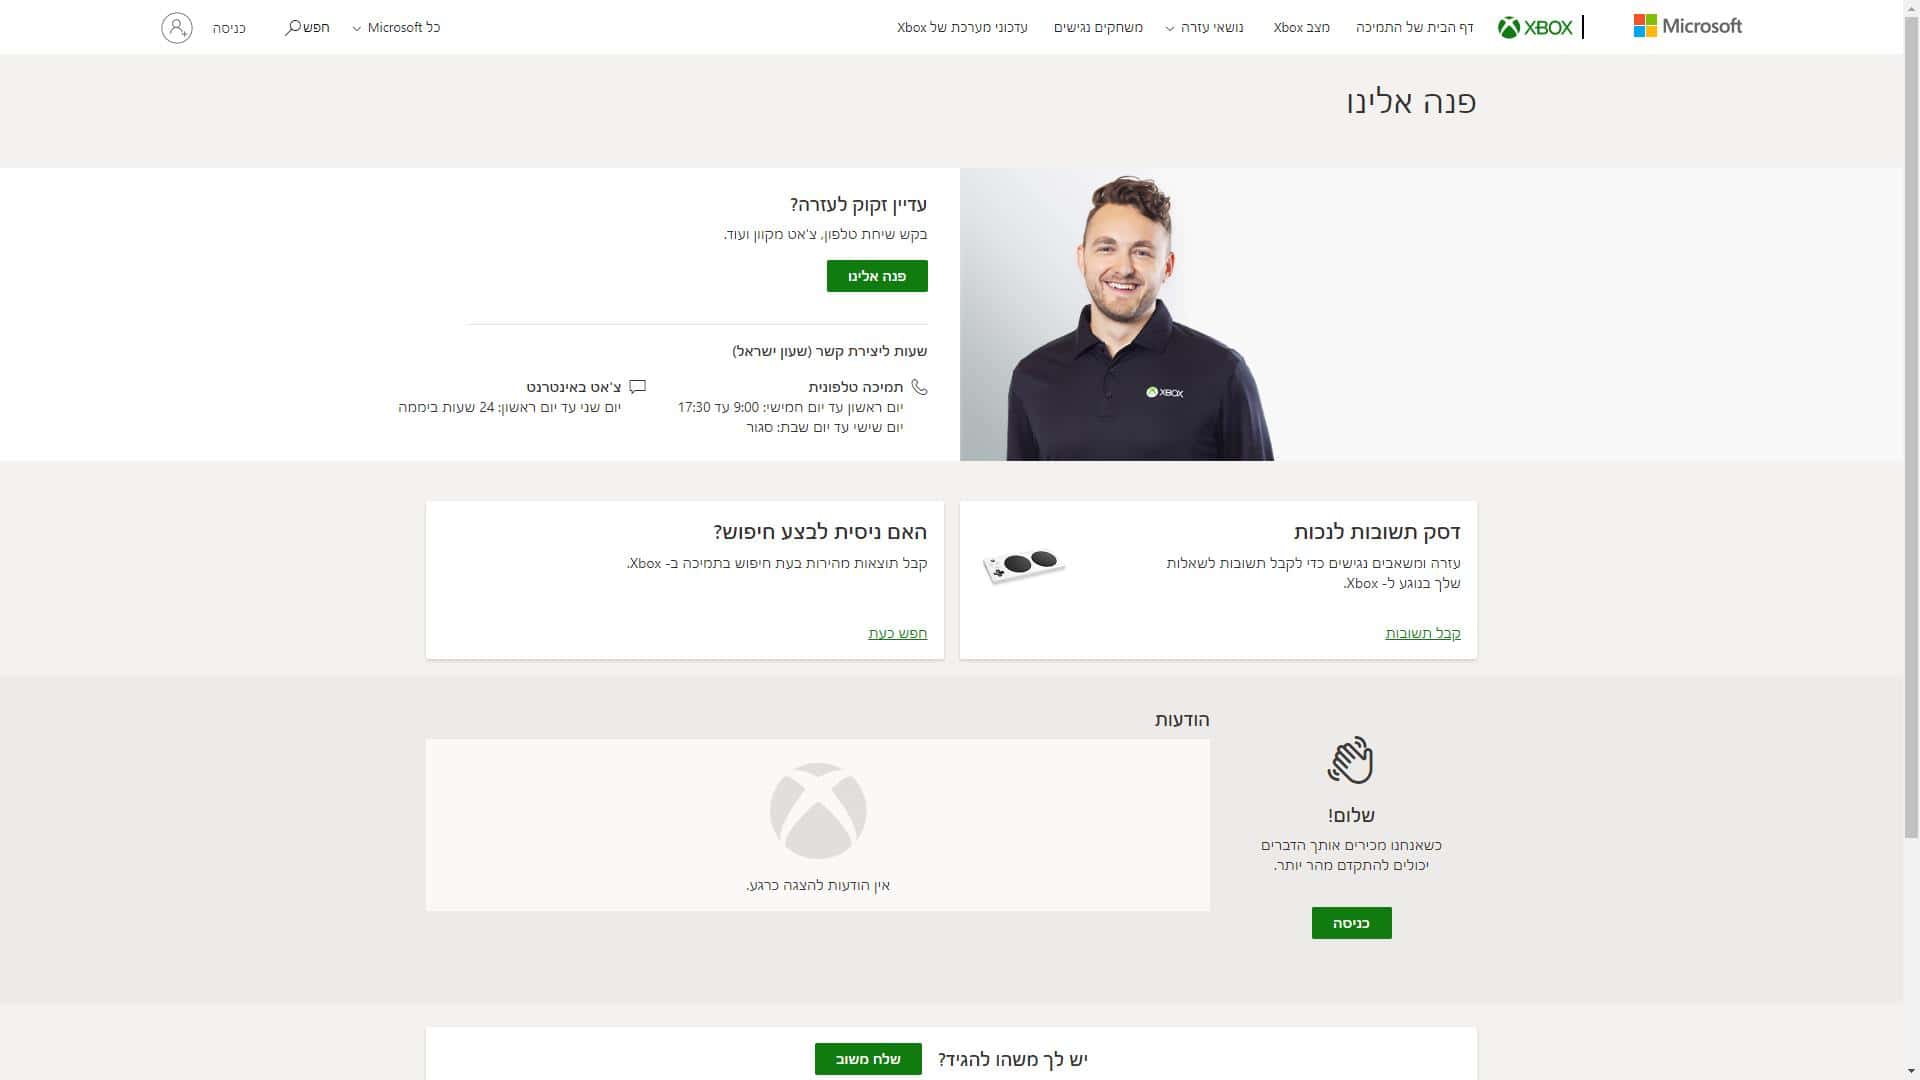 אקסבוקס ישראל Xbox Israel טופס יצירת קשר צילום מסך